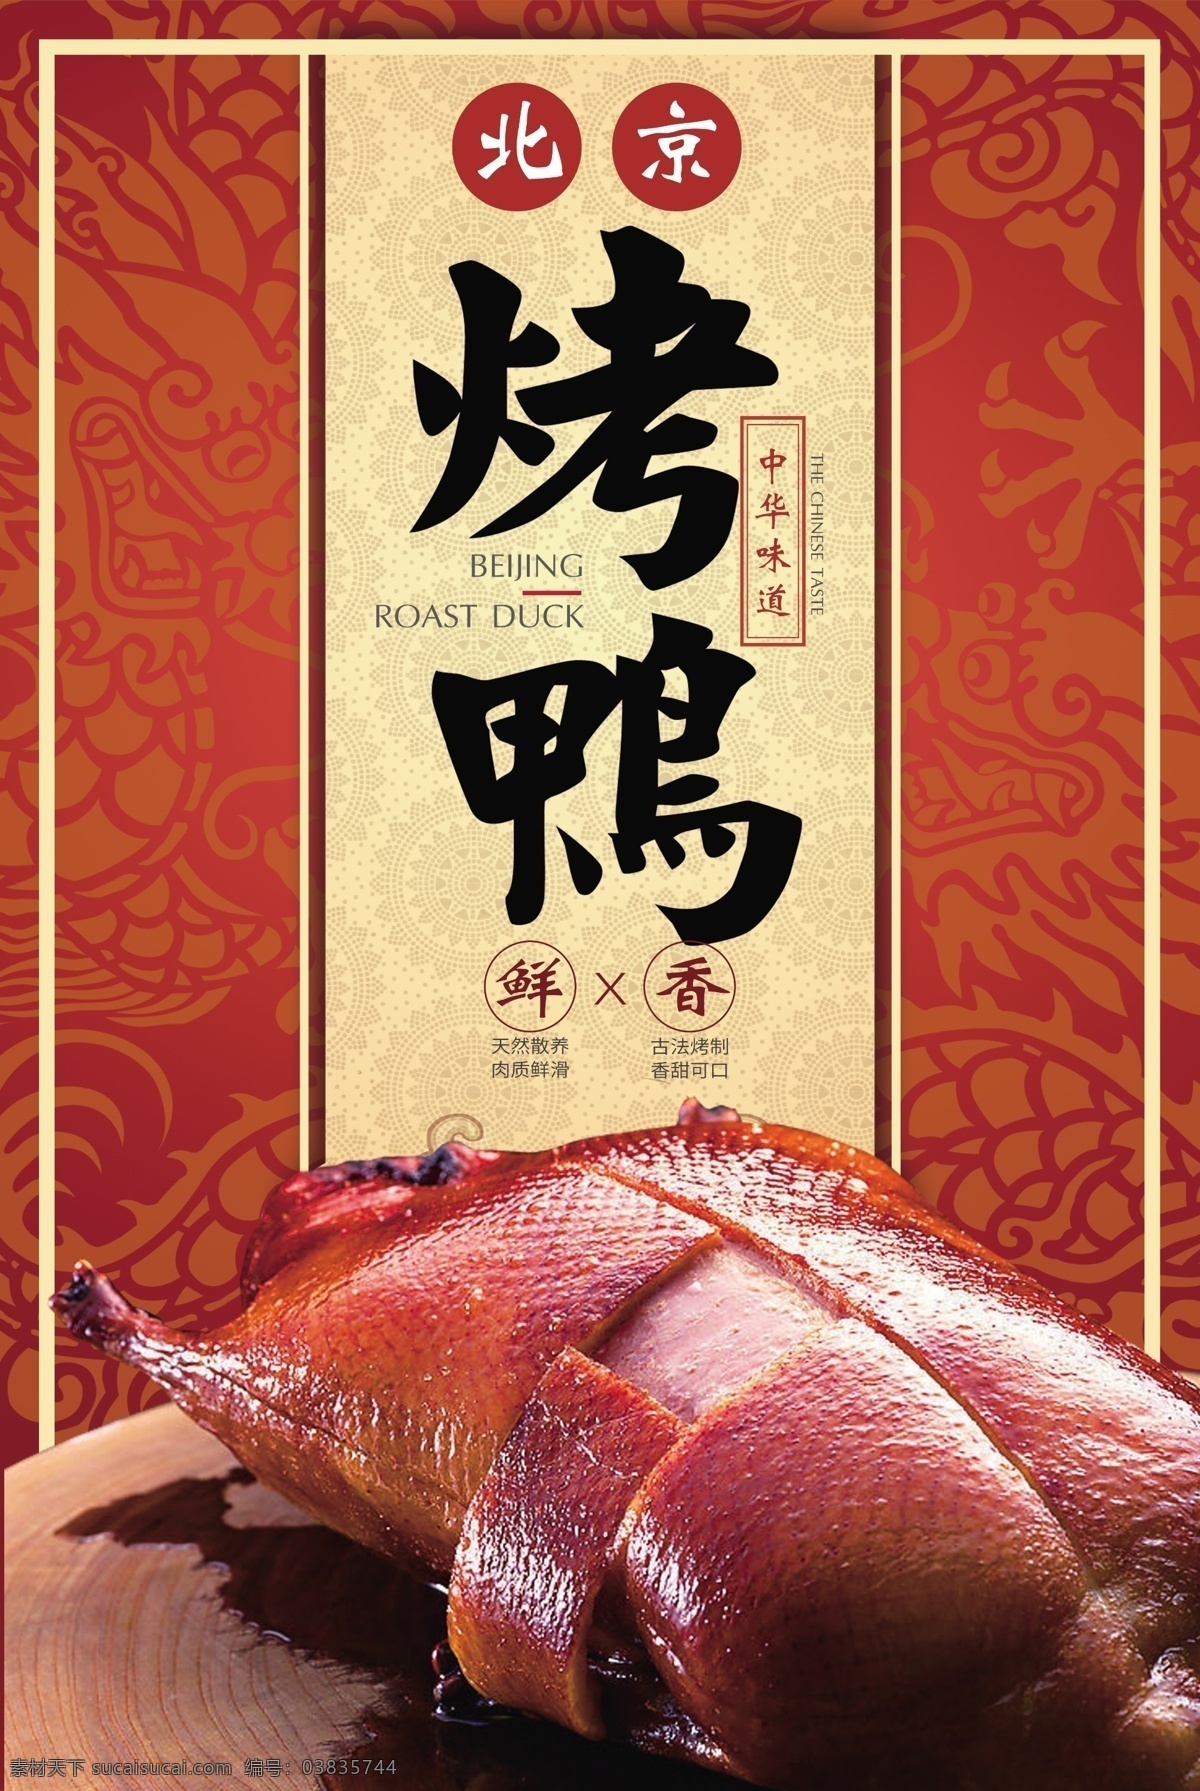 烤鸭海报 北京烤鸭 烤鸭 烤鸭展板 烤鸭图片 海报